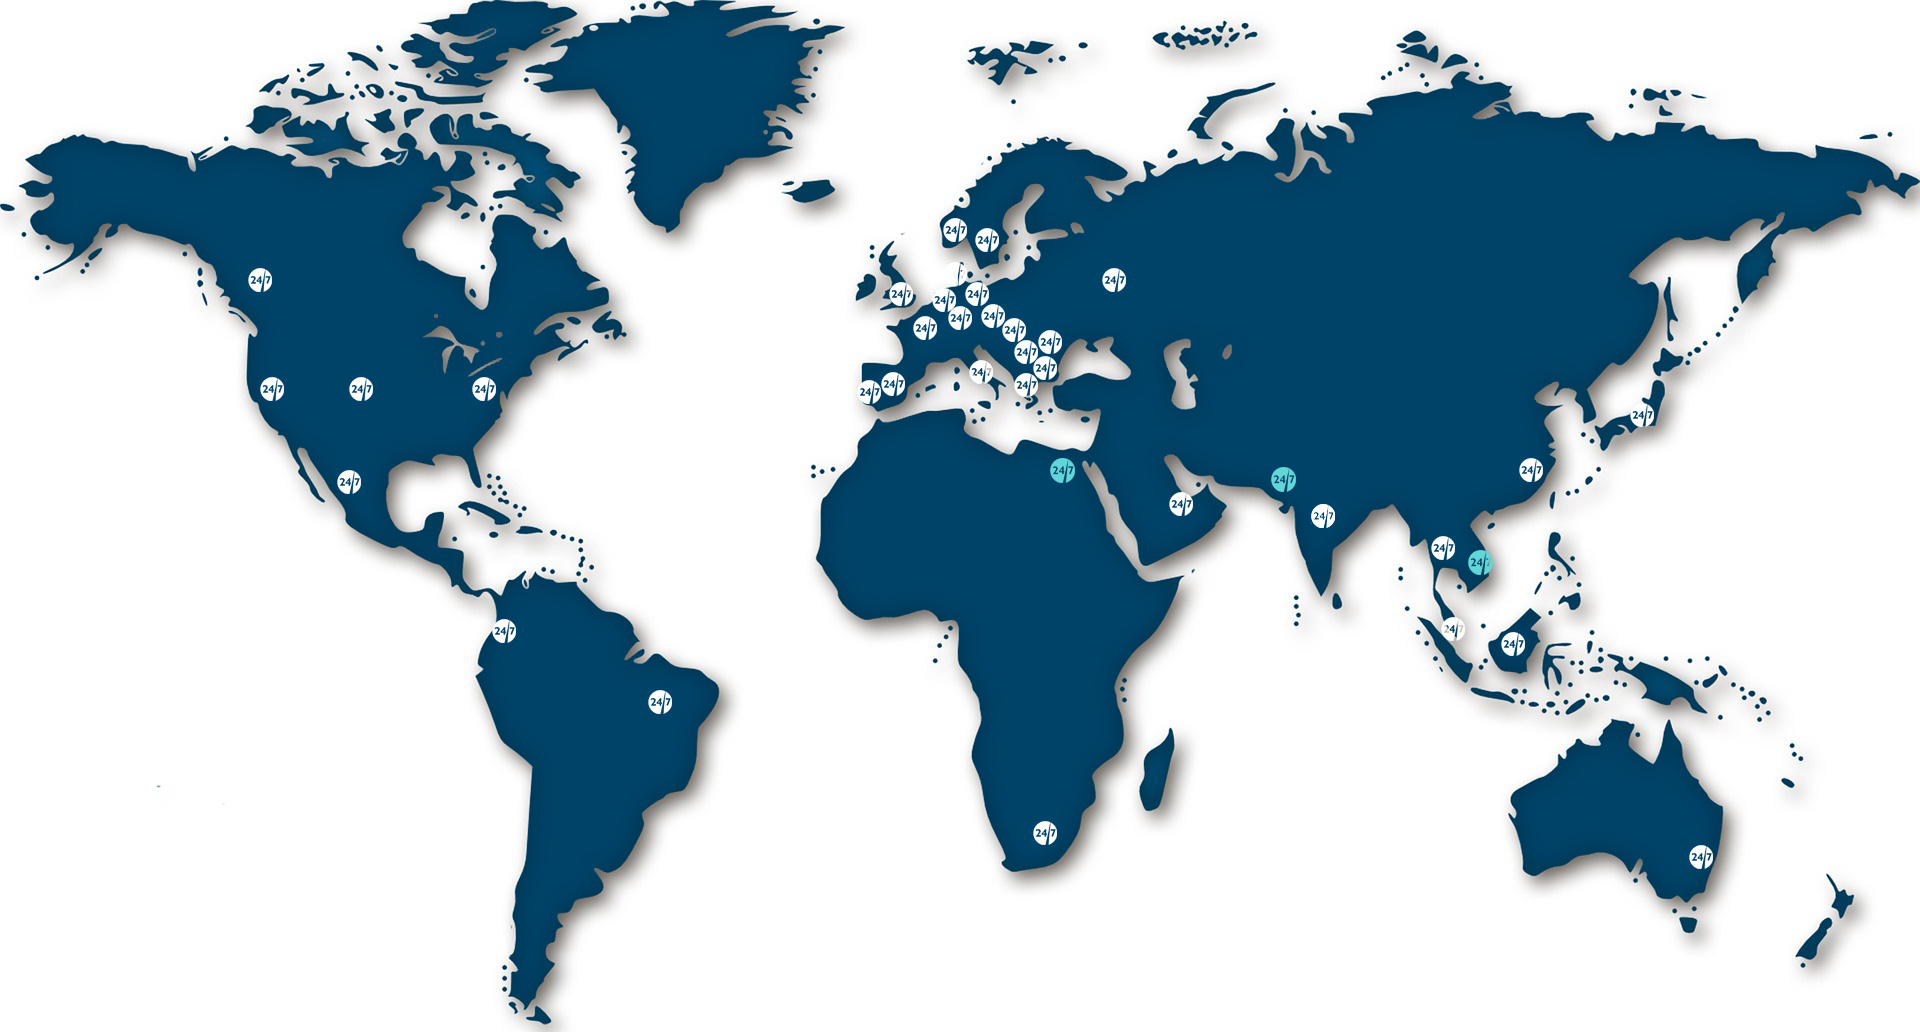 Peta dunia berwarna biru tua dengan logo bulat putih di lokasi UX24/7